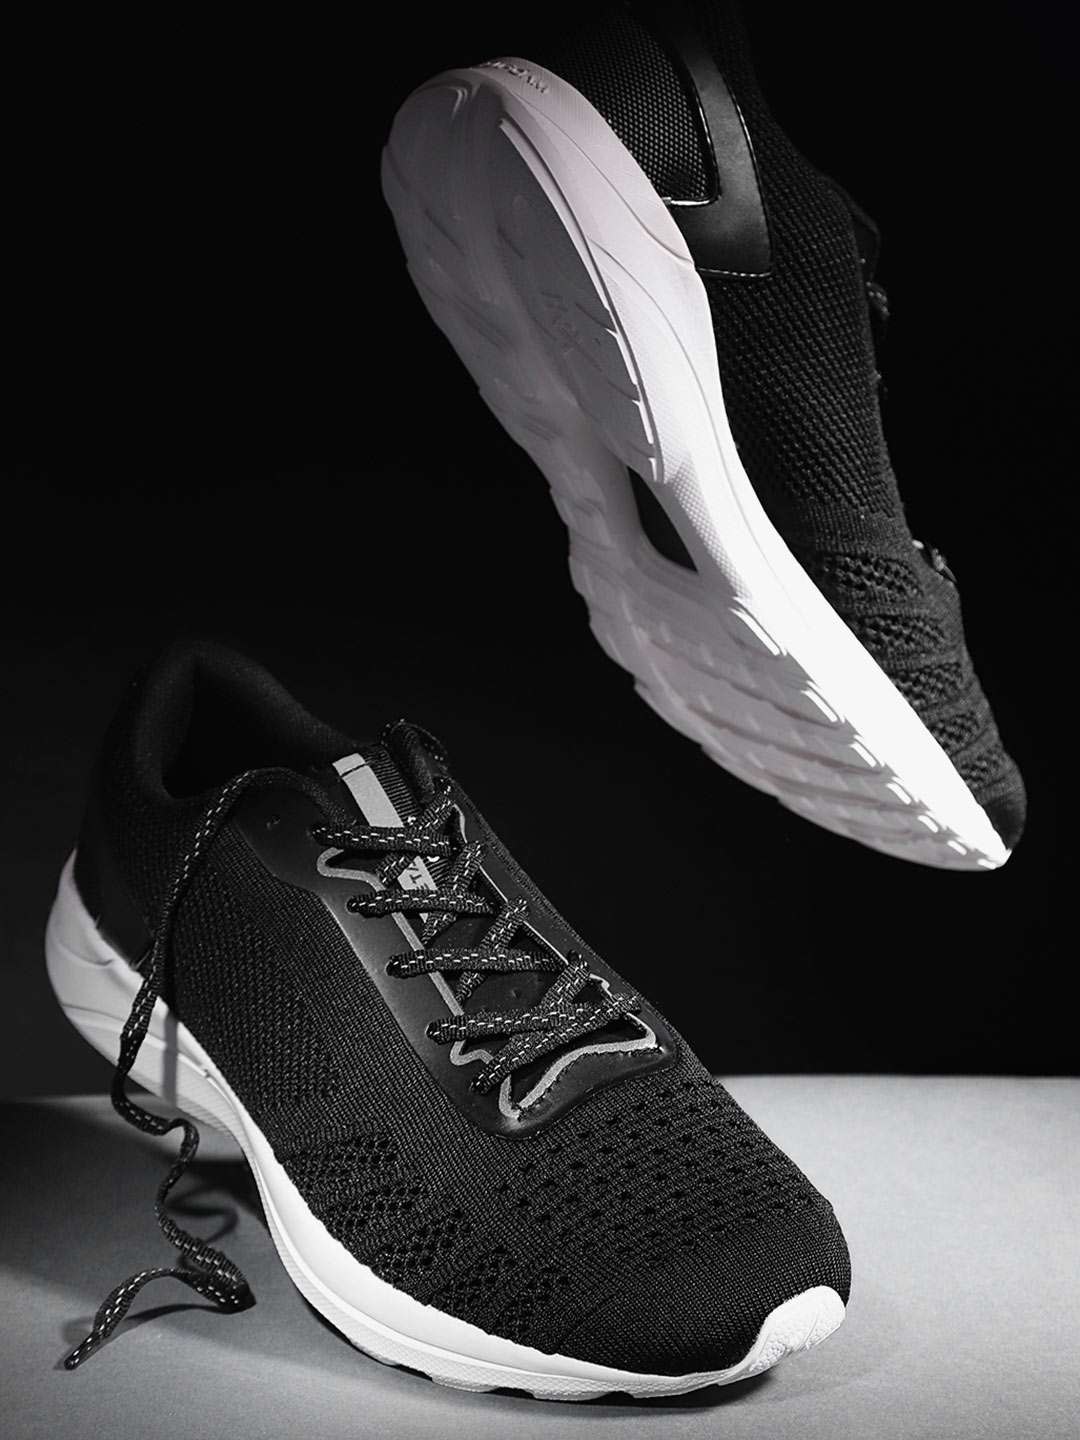 hrx black sports shoes